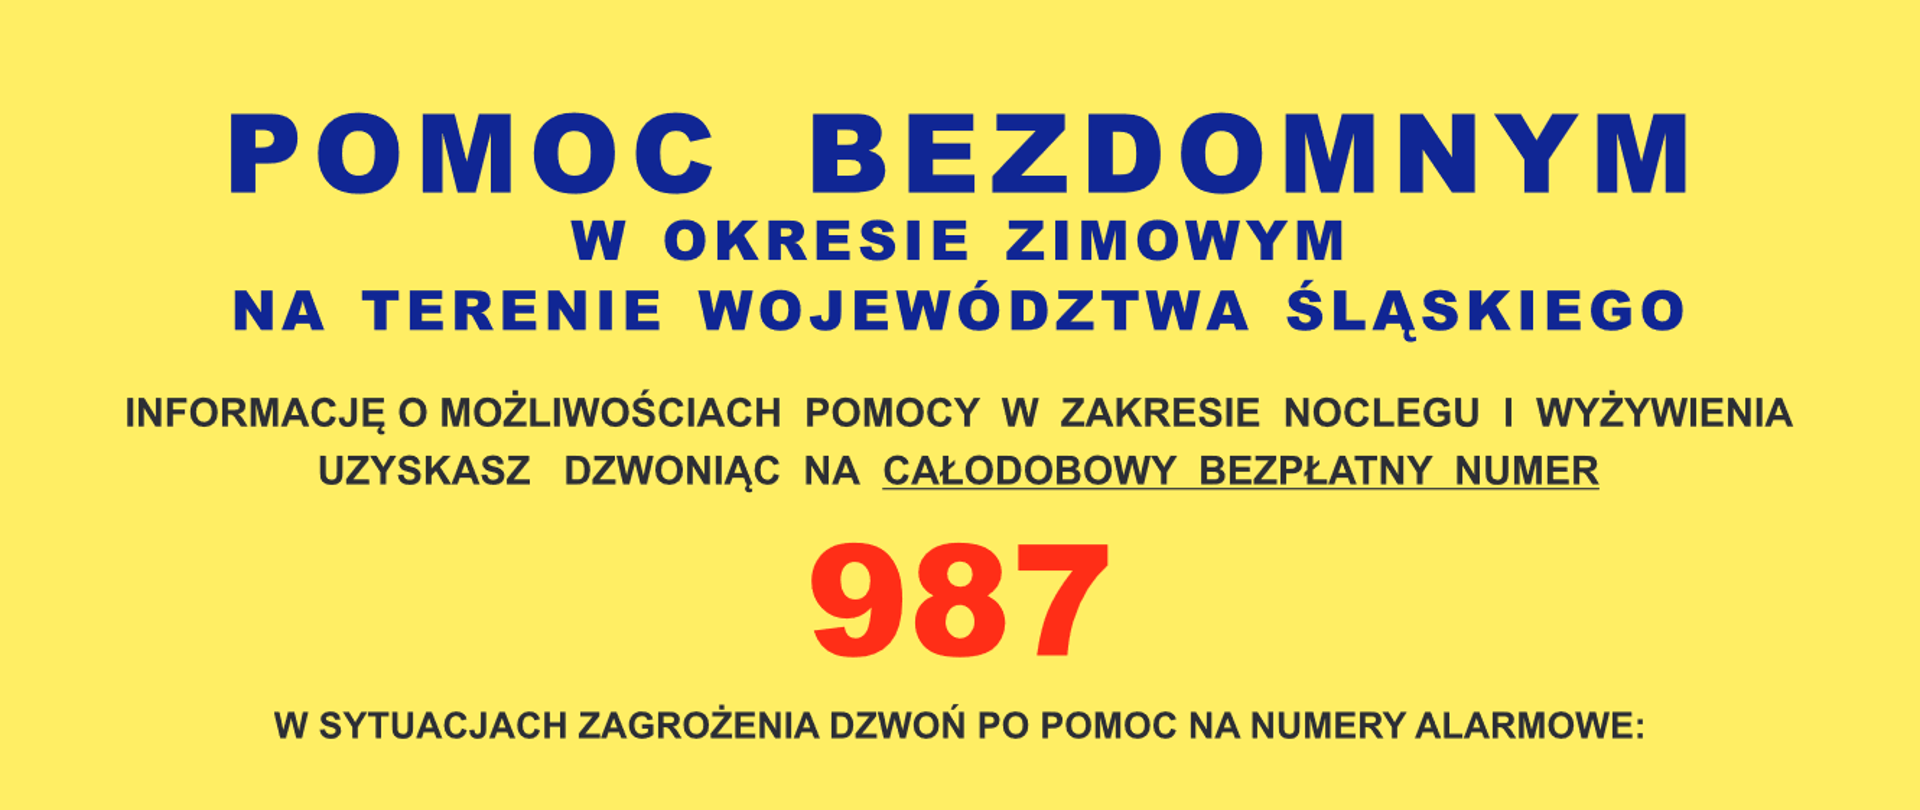 Pomoc bezdomnym w okresie zimowym na terenie województwa śląskiego